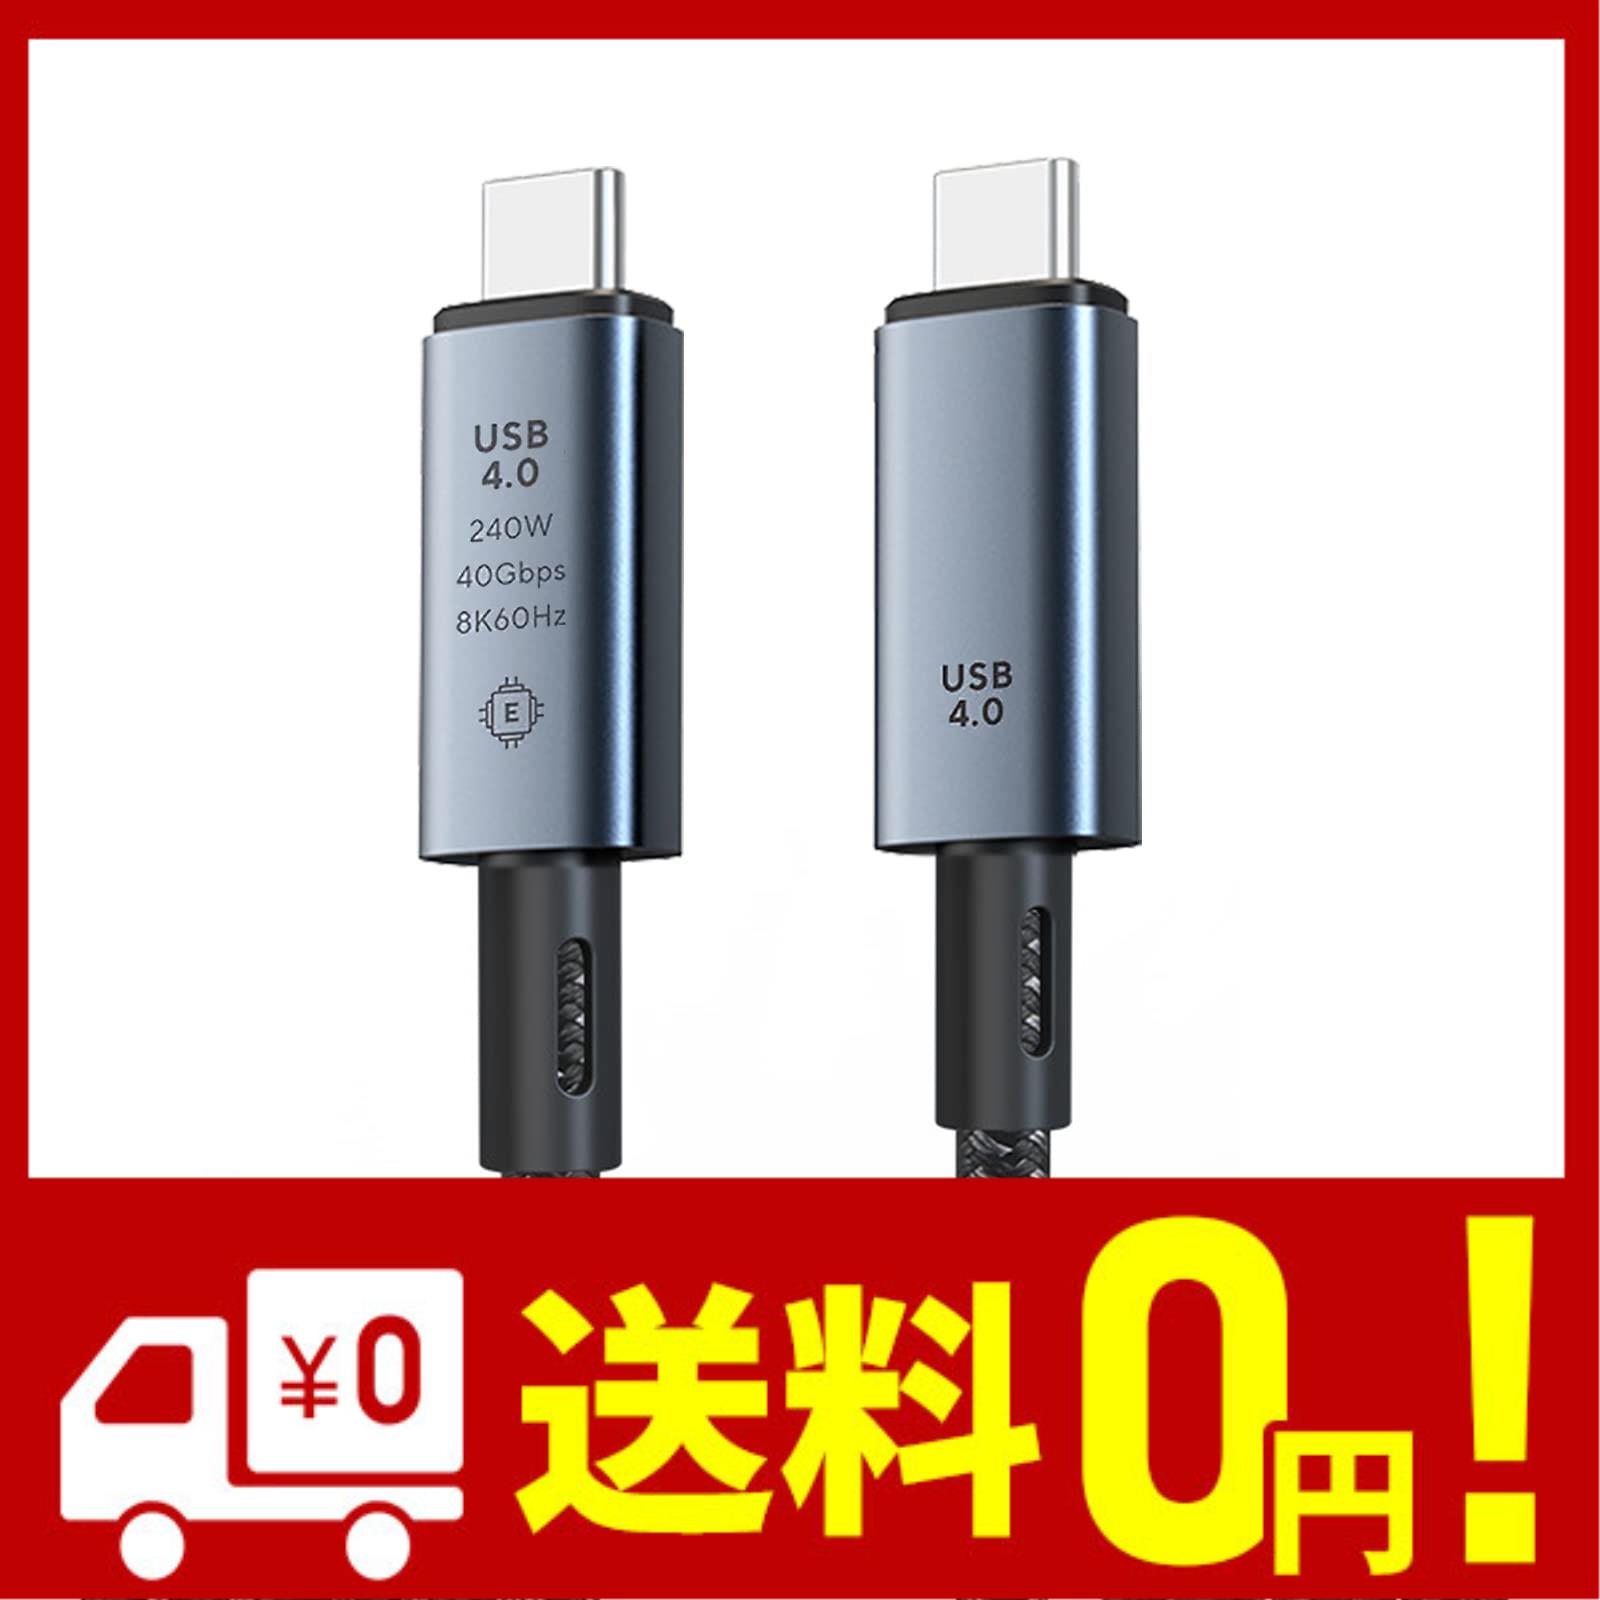 USB4 ケーブル 0.3m Thunderbolt 4 対応 LpoieJun 40Gbps高速転送 240W急速充電 8K@60Hz 映像出力 PD3.0 QC3.0対応 E-Marker搭載 USB 3.